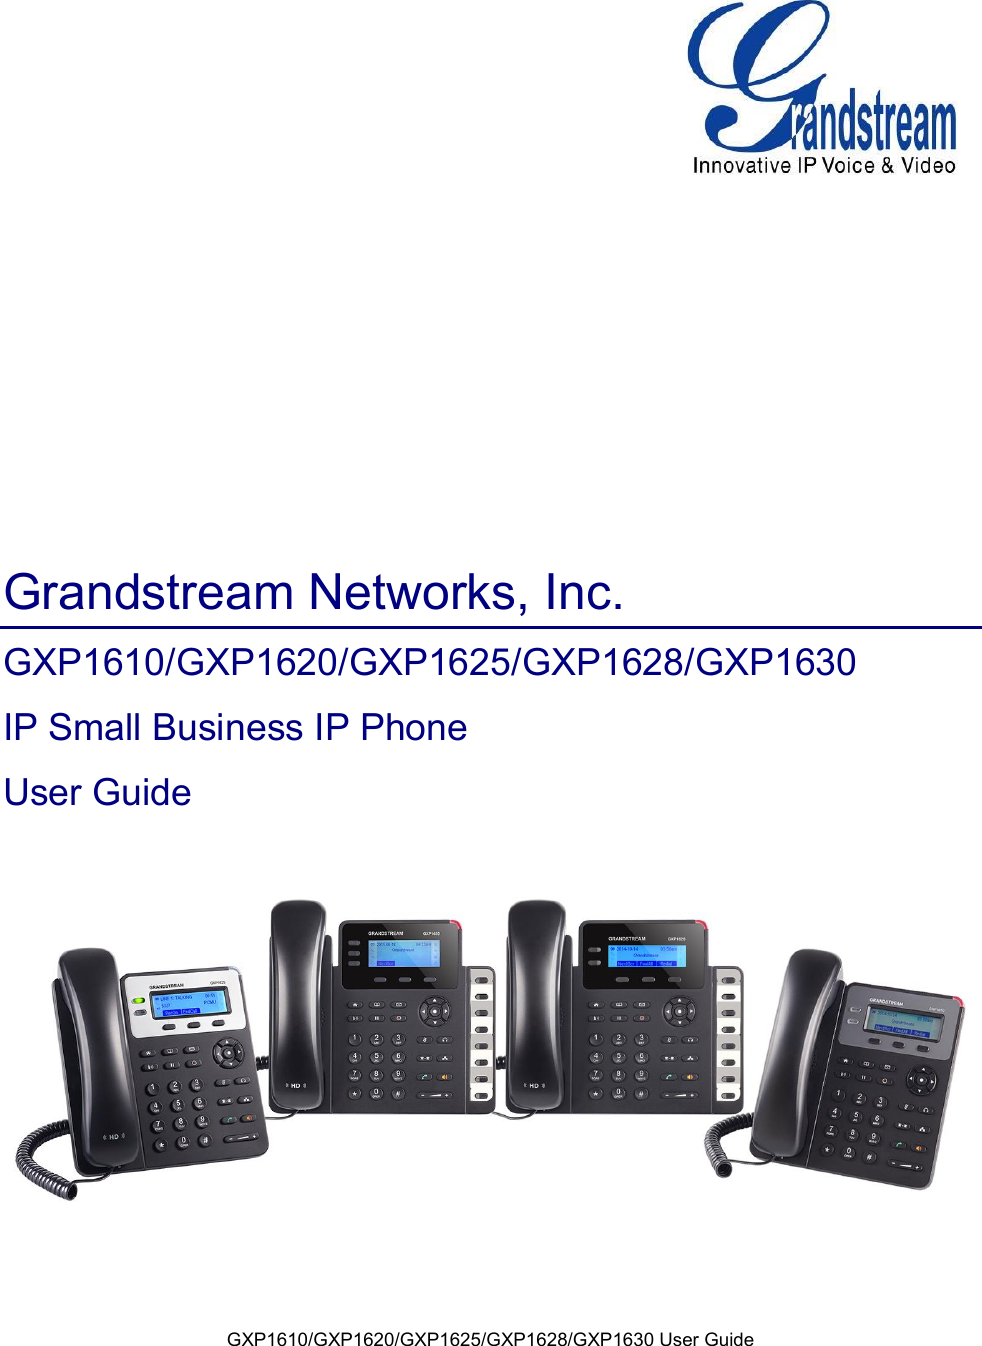 GXP1610/GXP1620/GXP1625/GXP1628/GXP1630 User Guide        Grandstream Networks, Inc. GXP1610/GXP1620/GXP1625/GXP1628/GXP1630 IP Small Business IP Phone User Guide       